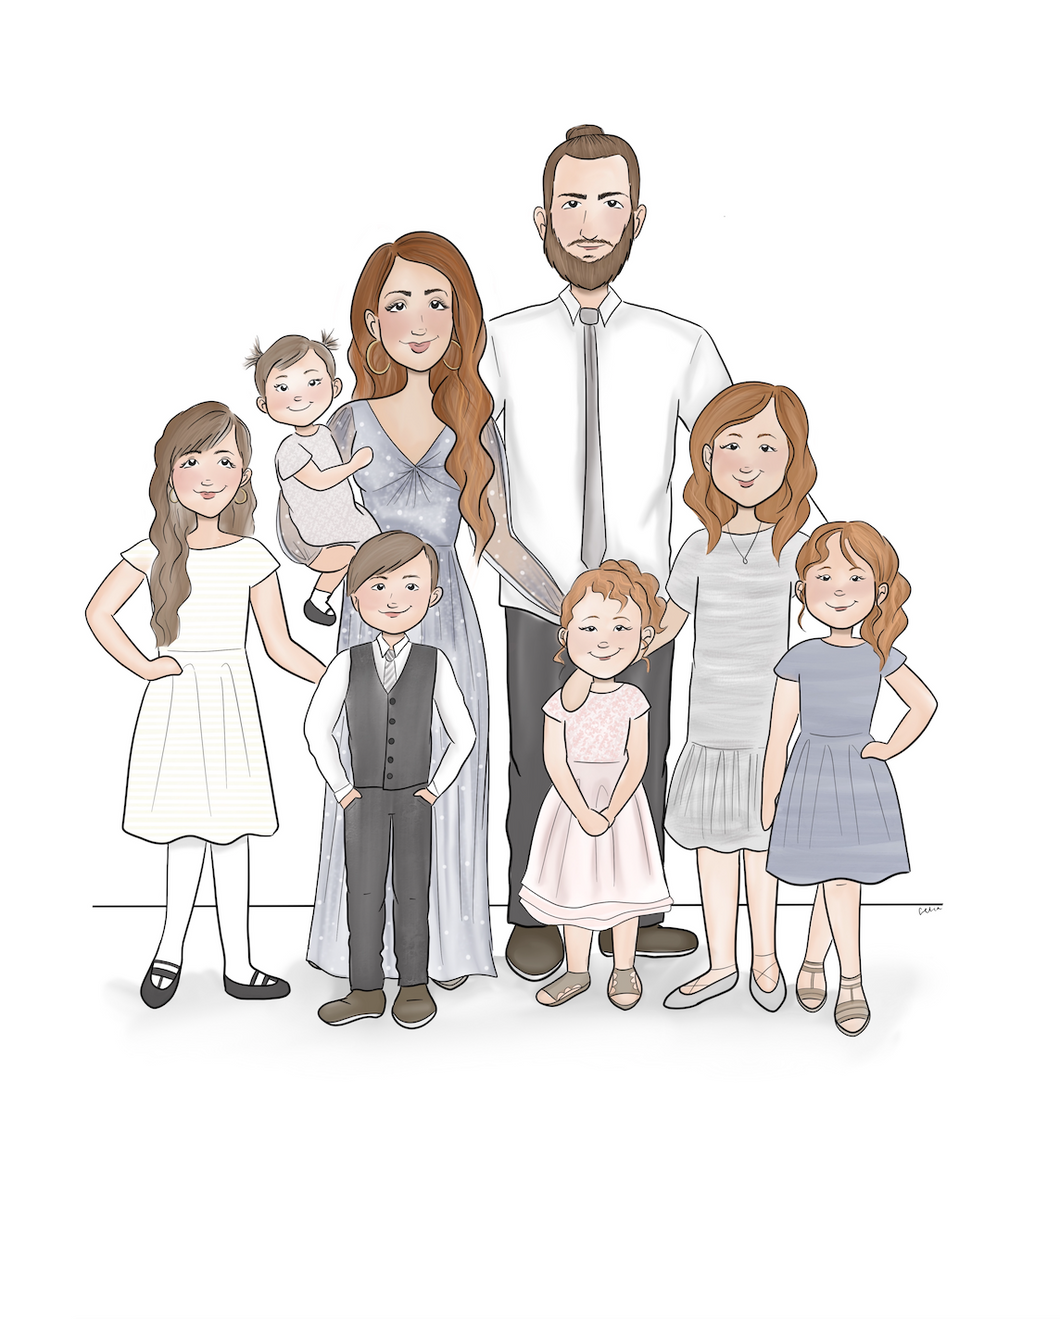 Family of 8 - Custom Portrait